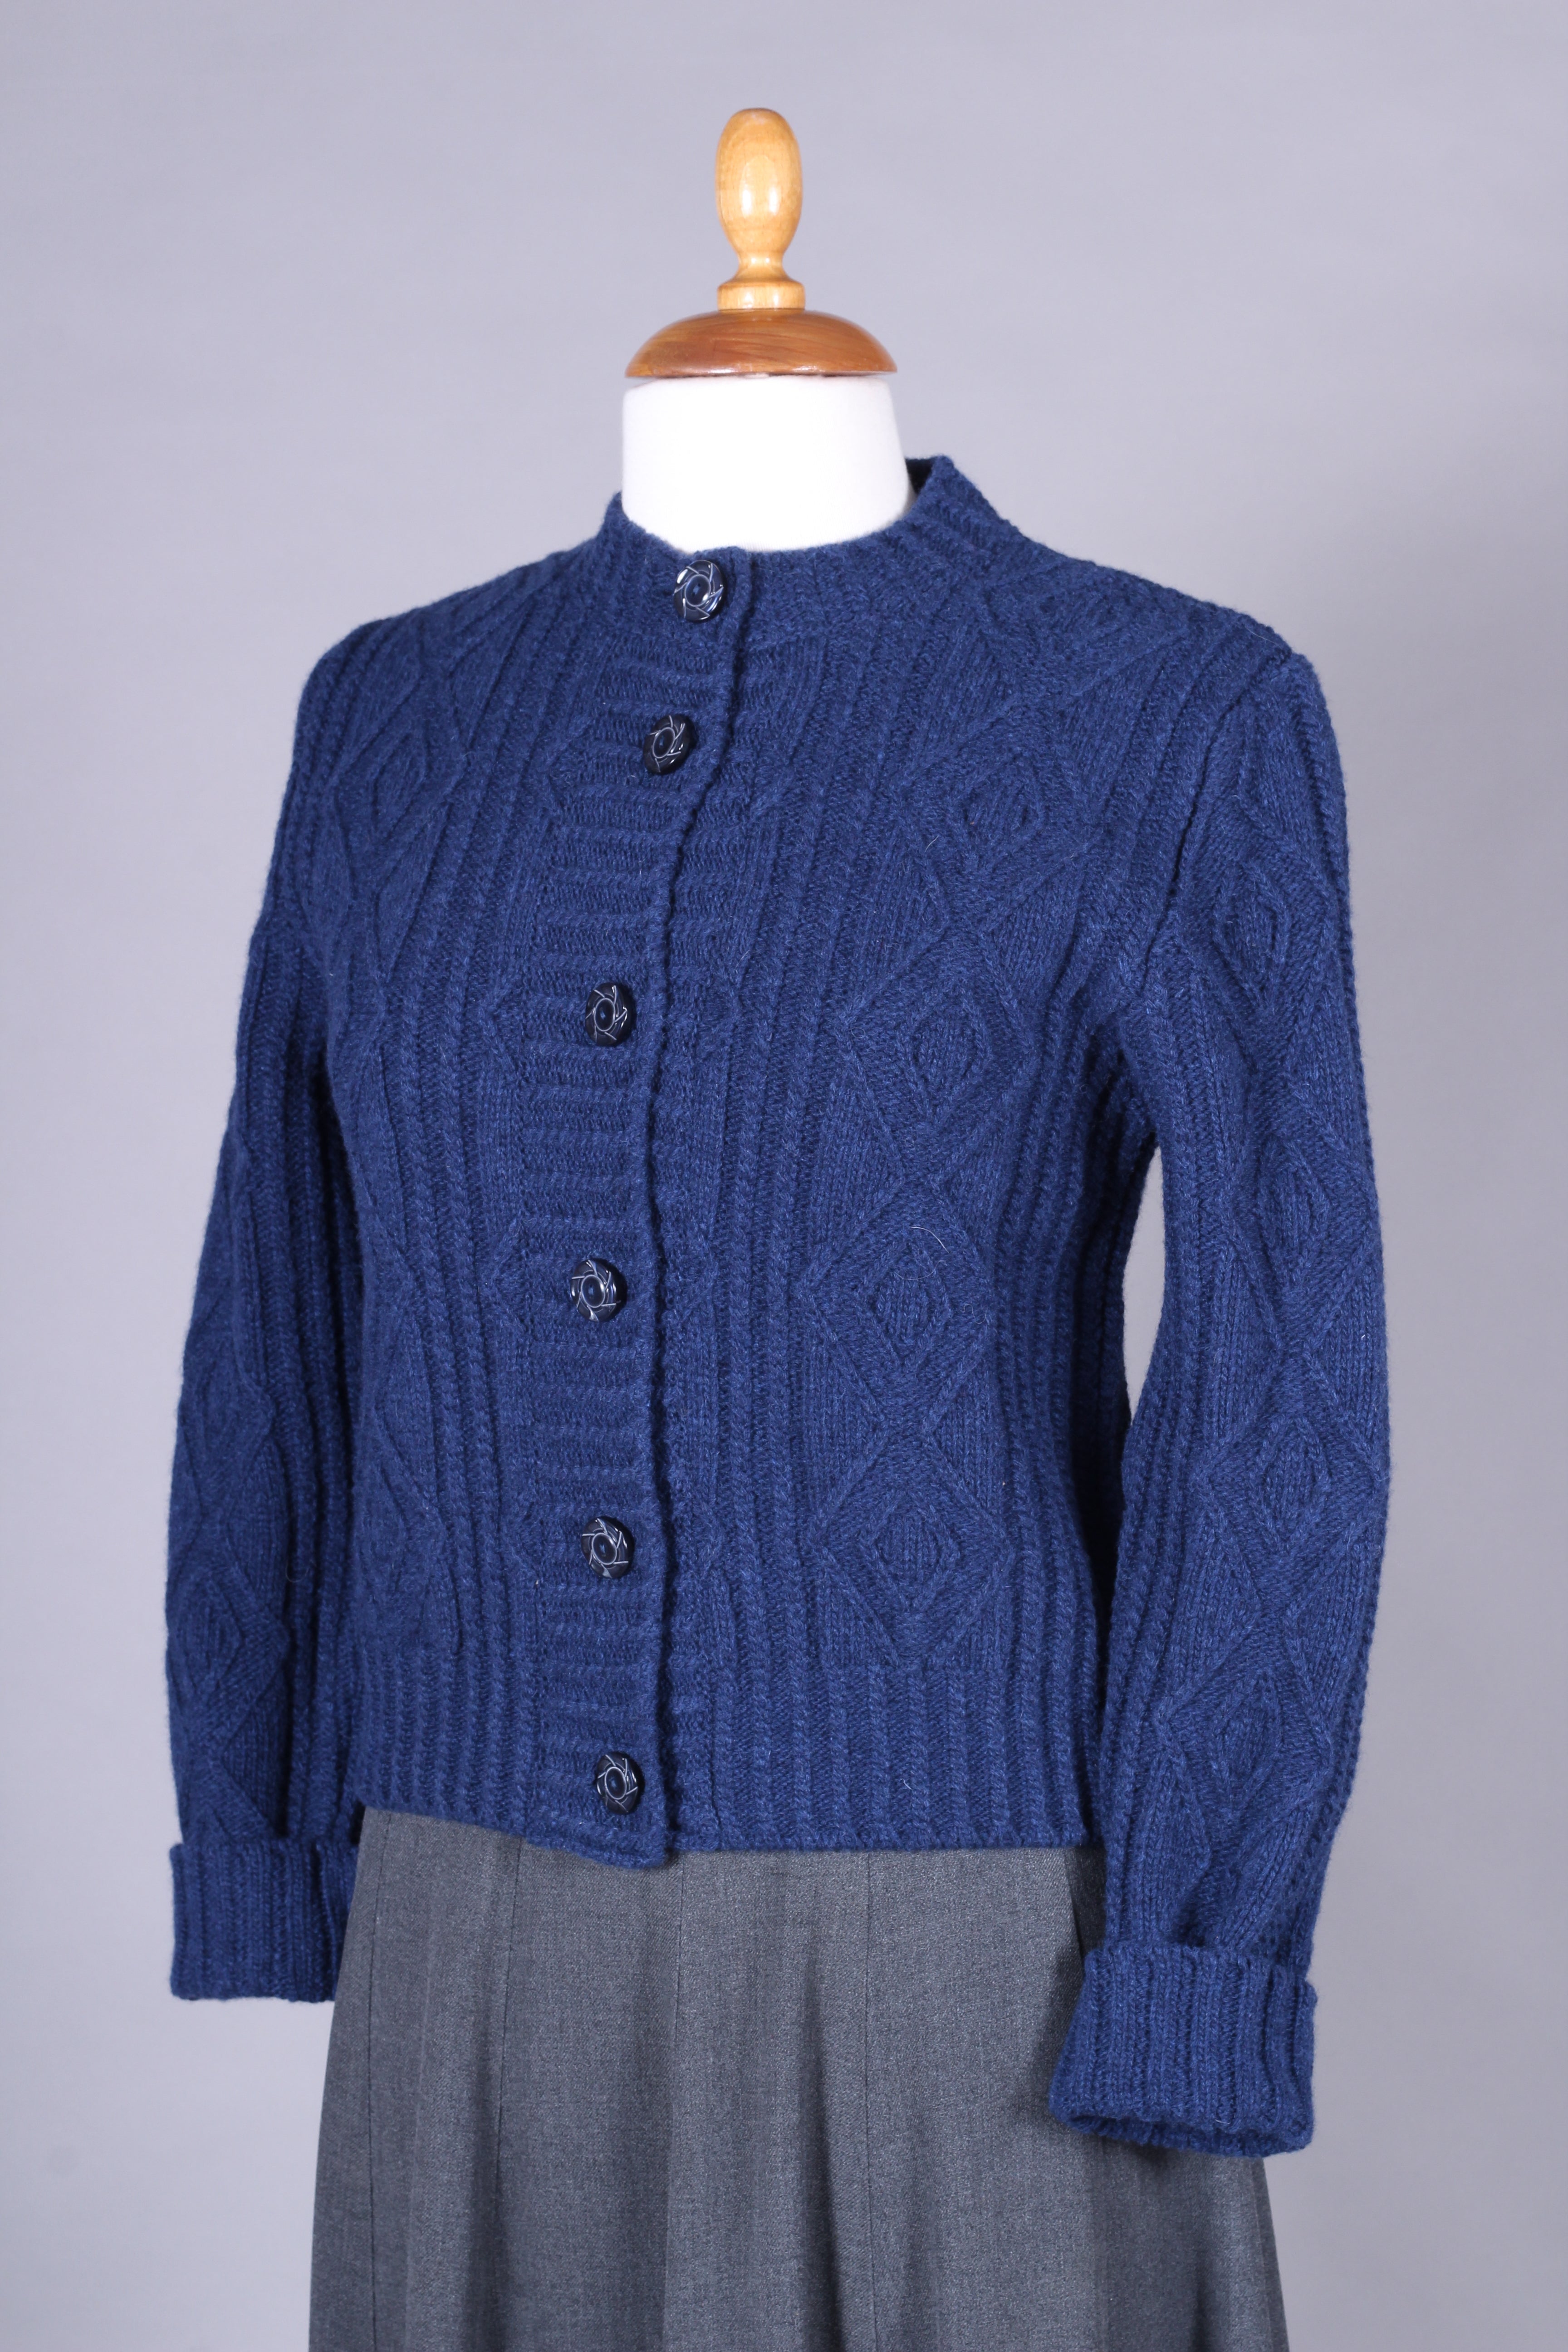 1940’er - tidlig 1960’er - Klassisk vintage style cardigan - Marineblå - Ingrid